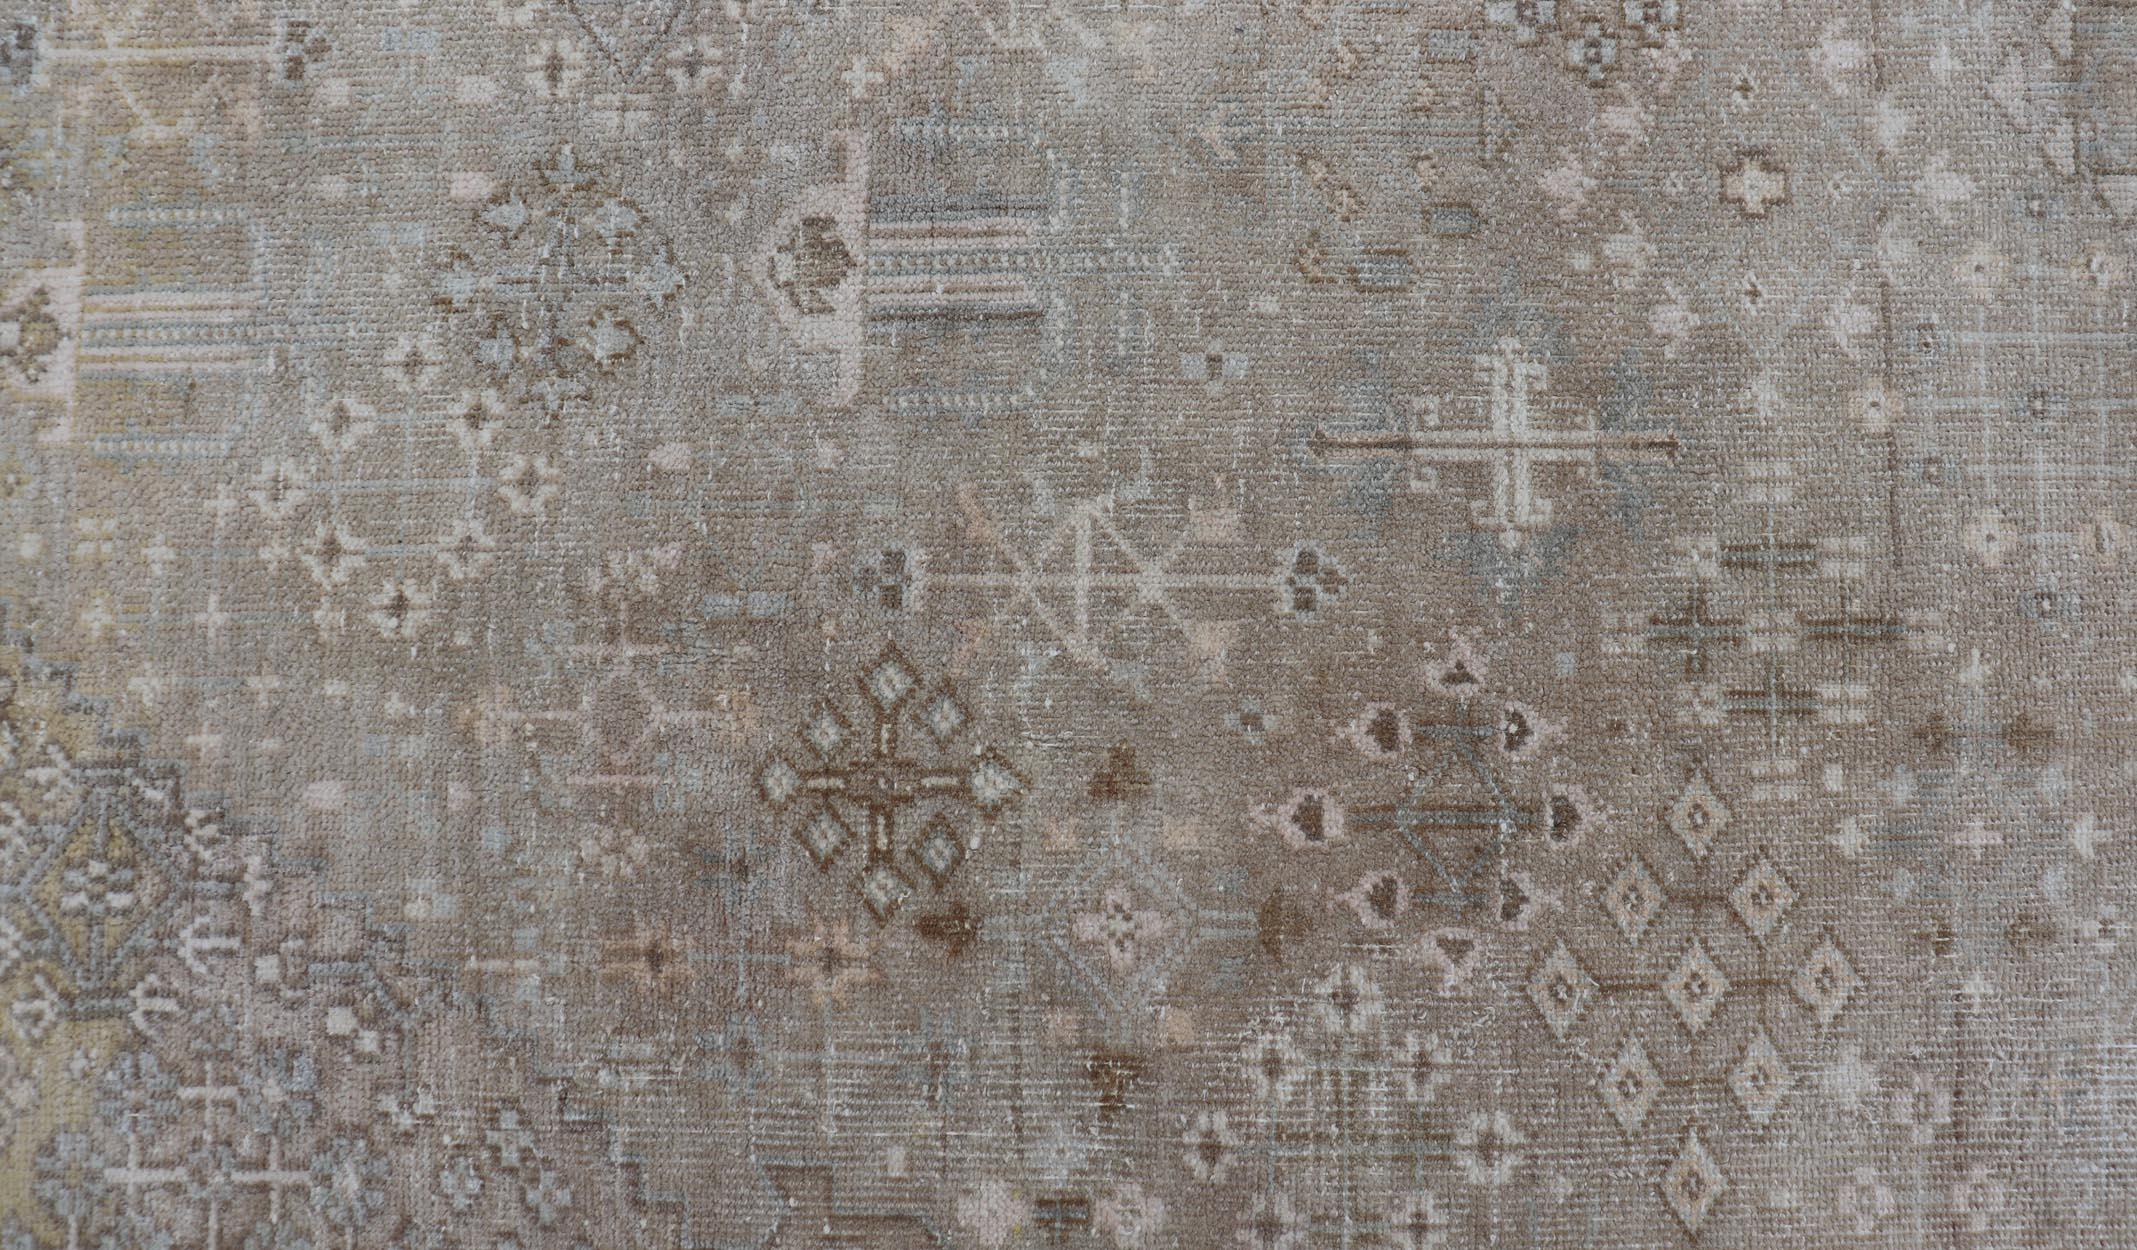 Maße: 7'8 x 11'0 

Dieser antike Joshegan-Teppich ist ein schönes Beispiel für das persische Know-how dieser Zeit. Der taupefarbene Hintergrund ist stark mit Motiven verziert, ebenso wie die Bordüre. Die bescheidenen Gesimse und das zentrale